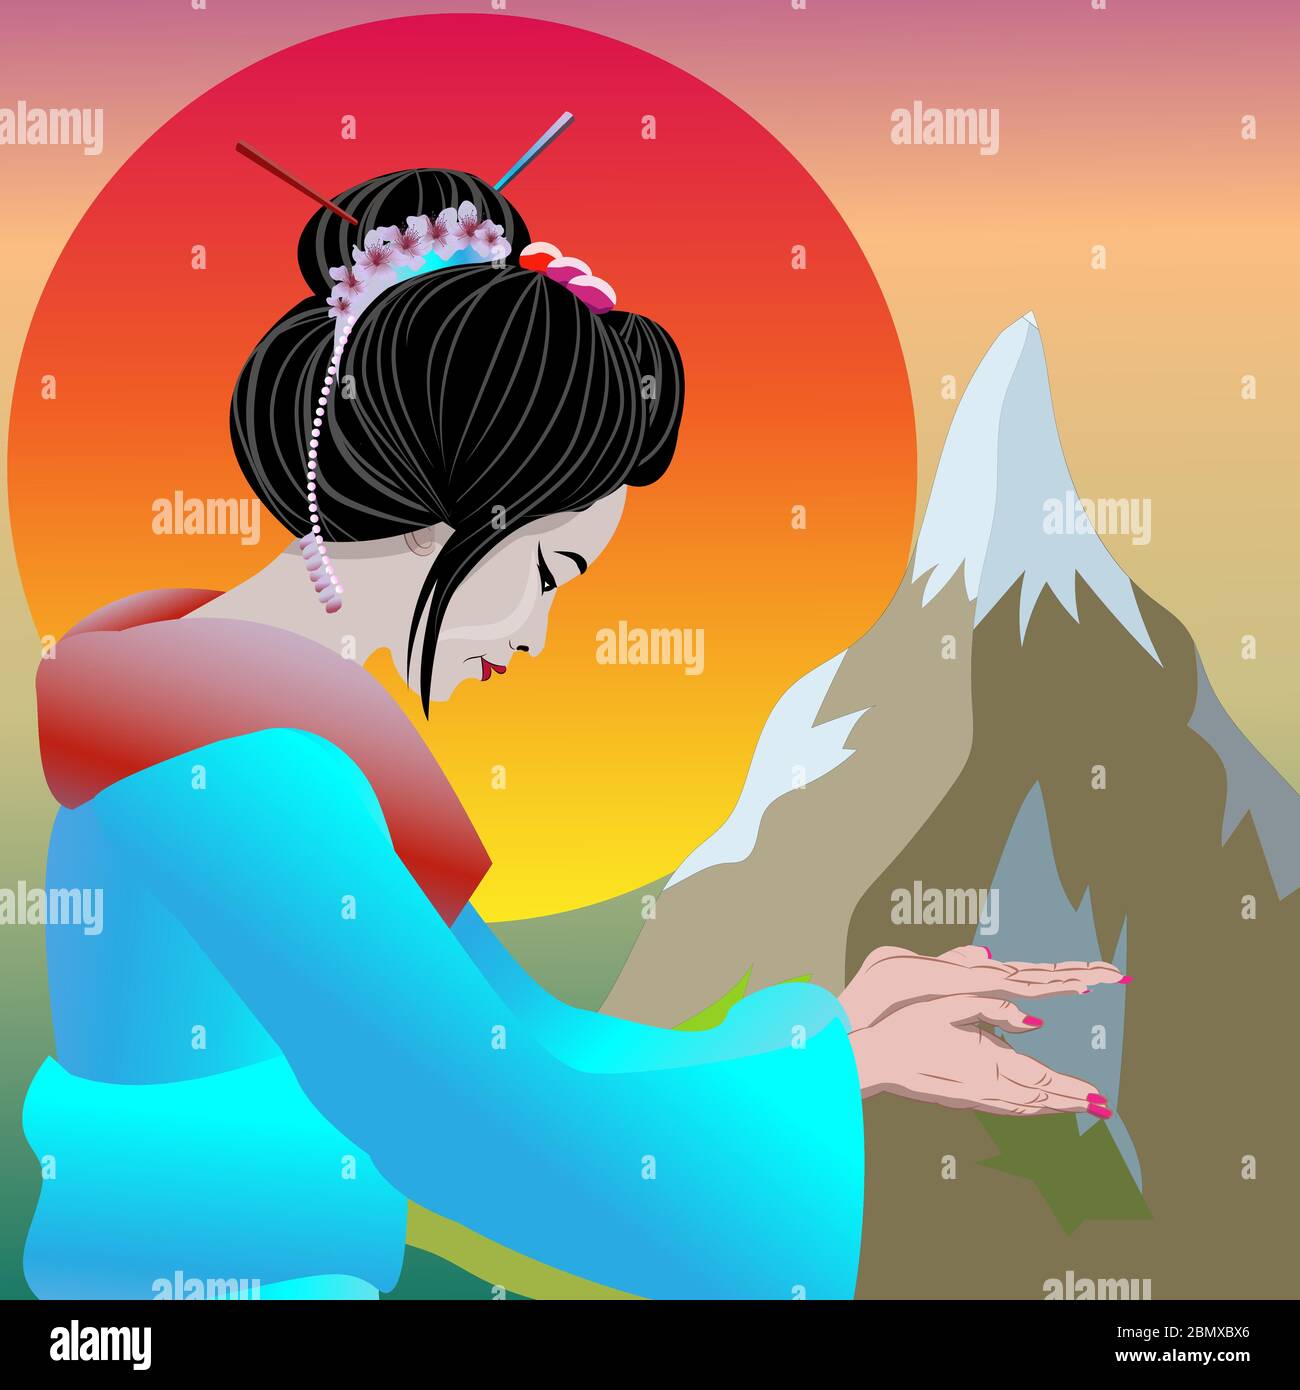 Geisha pointant avec les mains et invitant Bienvenue au Japon. Illustration vectorielle affiche geisha et nature Japon fond avec coucher de soleil et montagne. Illustration de Vecteur